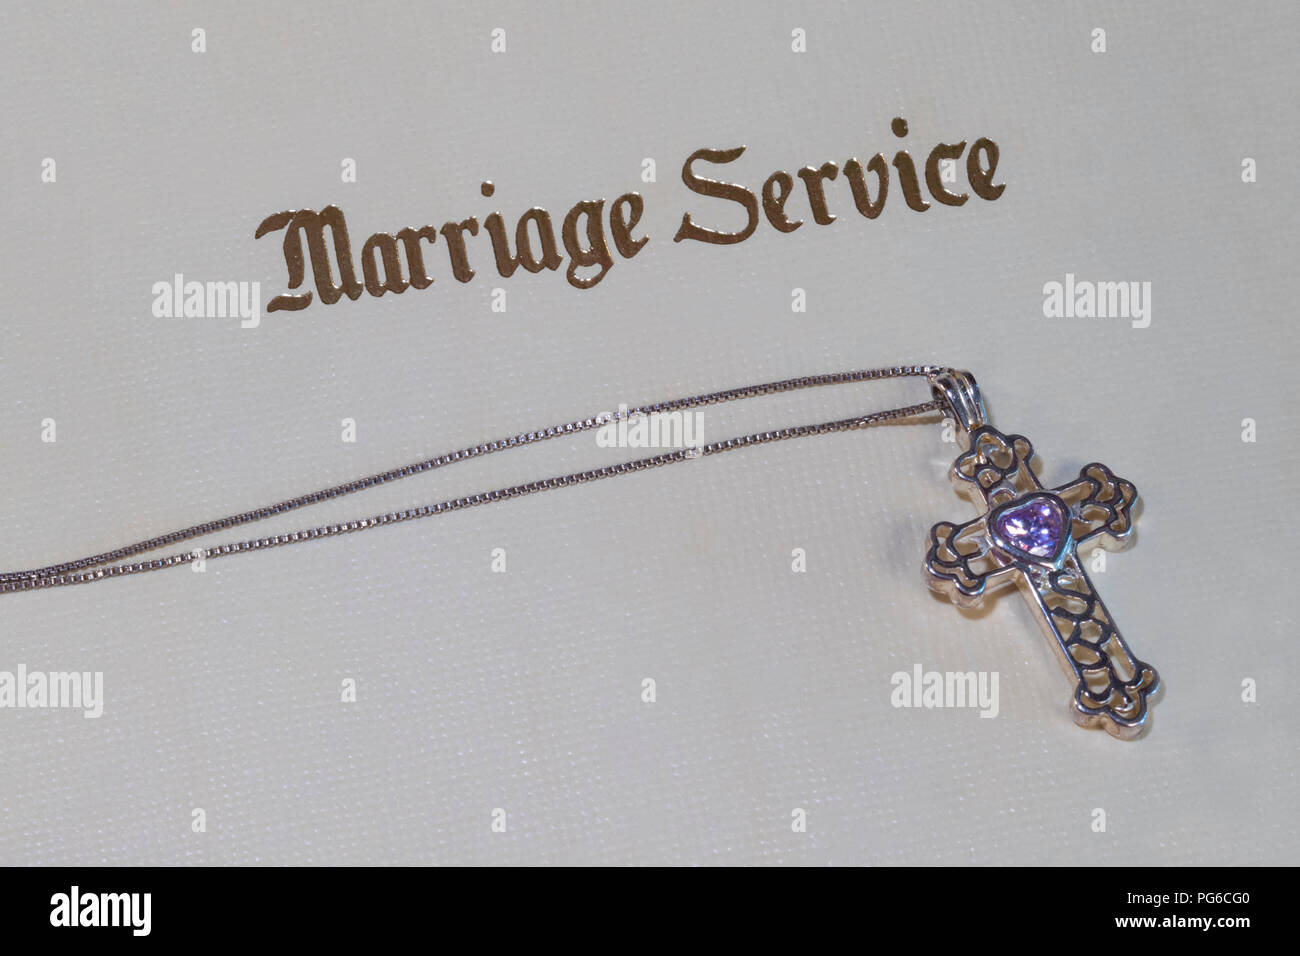 Le mariage avec l'annuaire de services et de la croix d'argent, pierre pourpre Banque D'Images